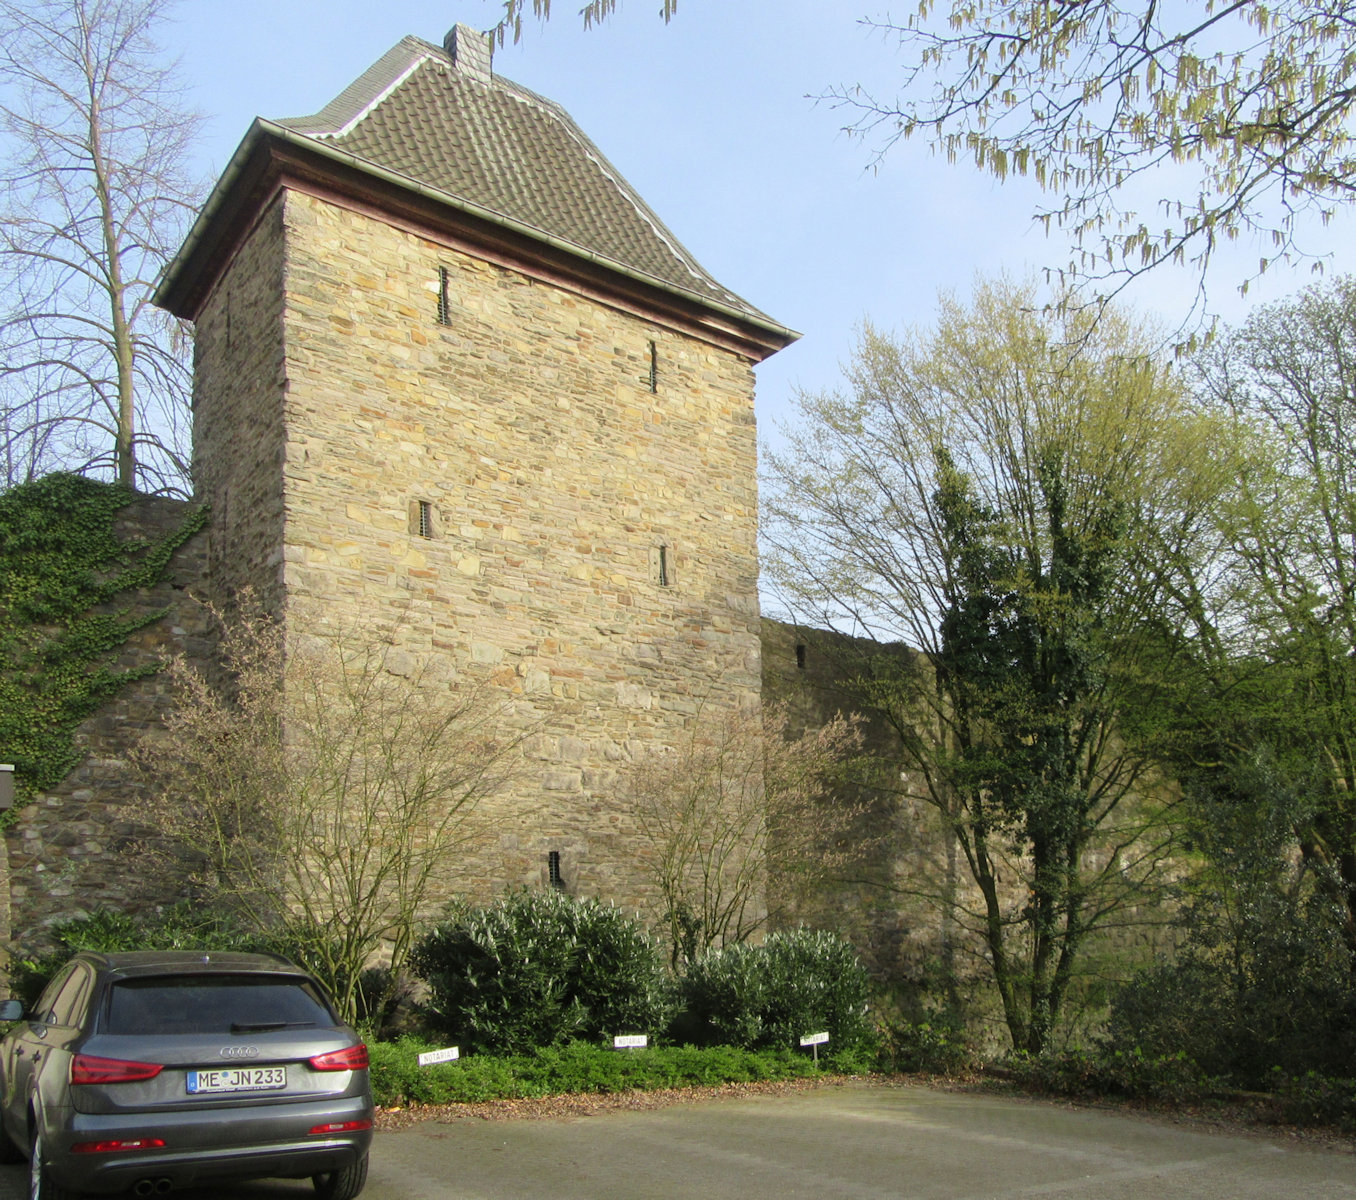 Trinsenturm, gebaut 1474, ein Teil der erhaltenen Stadtmauer in Ratingen bei Düsseldorf